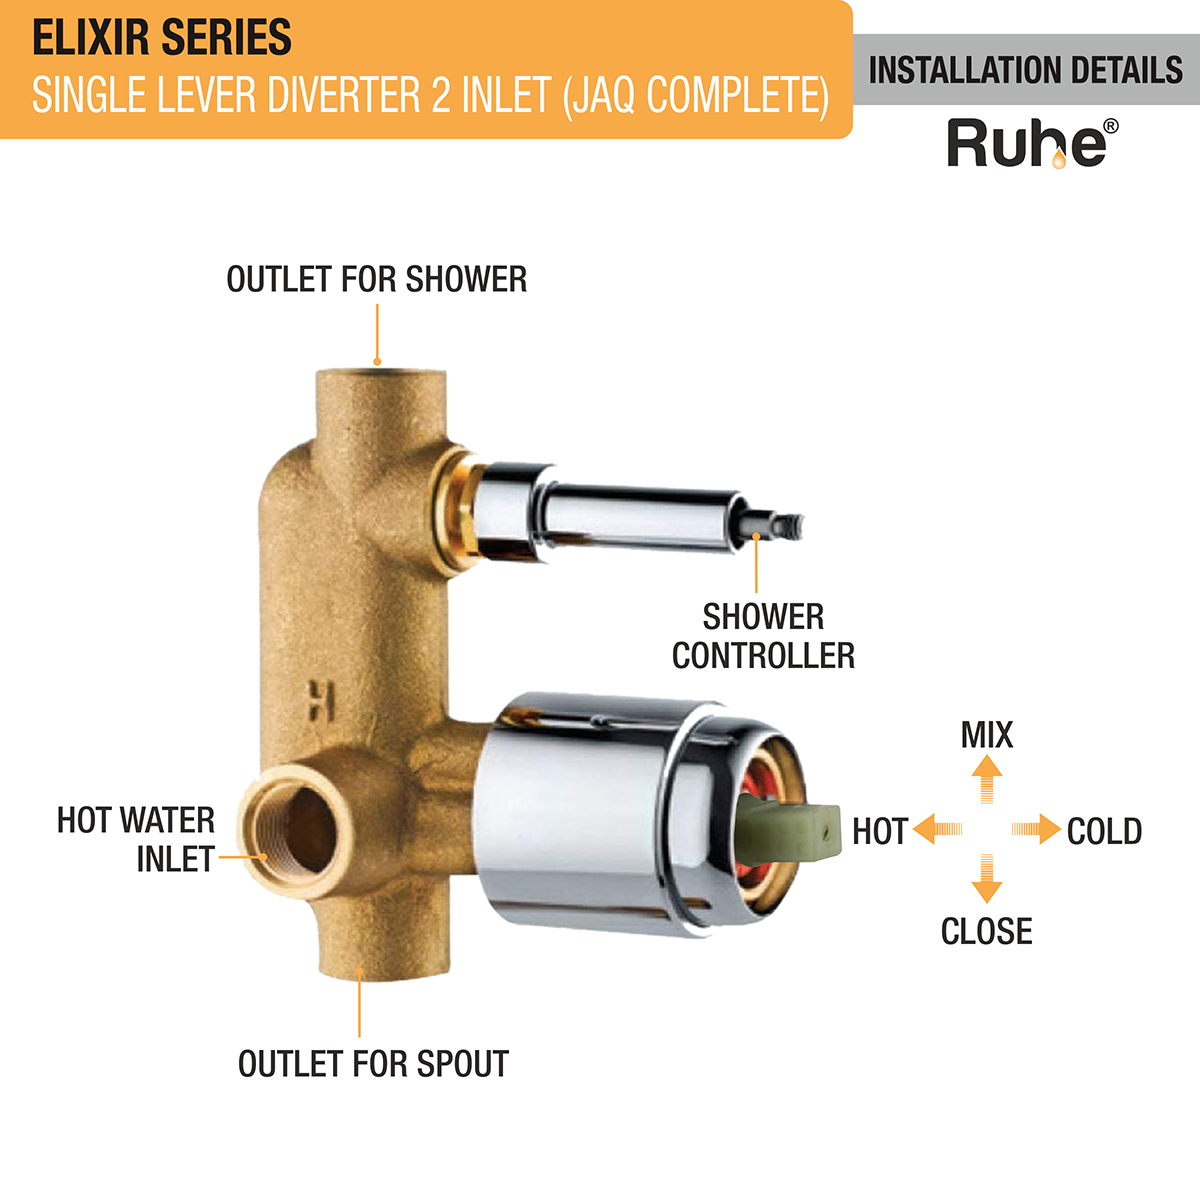 Elixir Single Lever 2-inlet Diverter (JAQ Complete Set) installation details